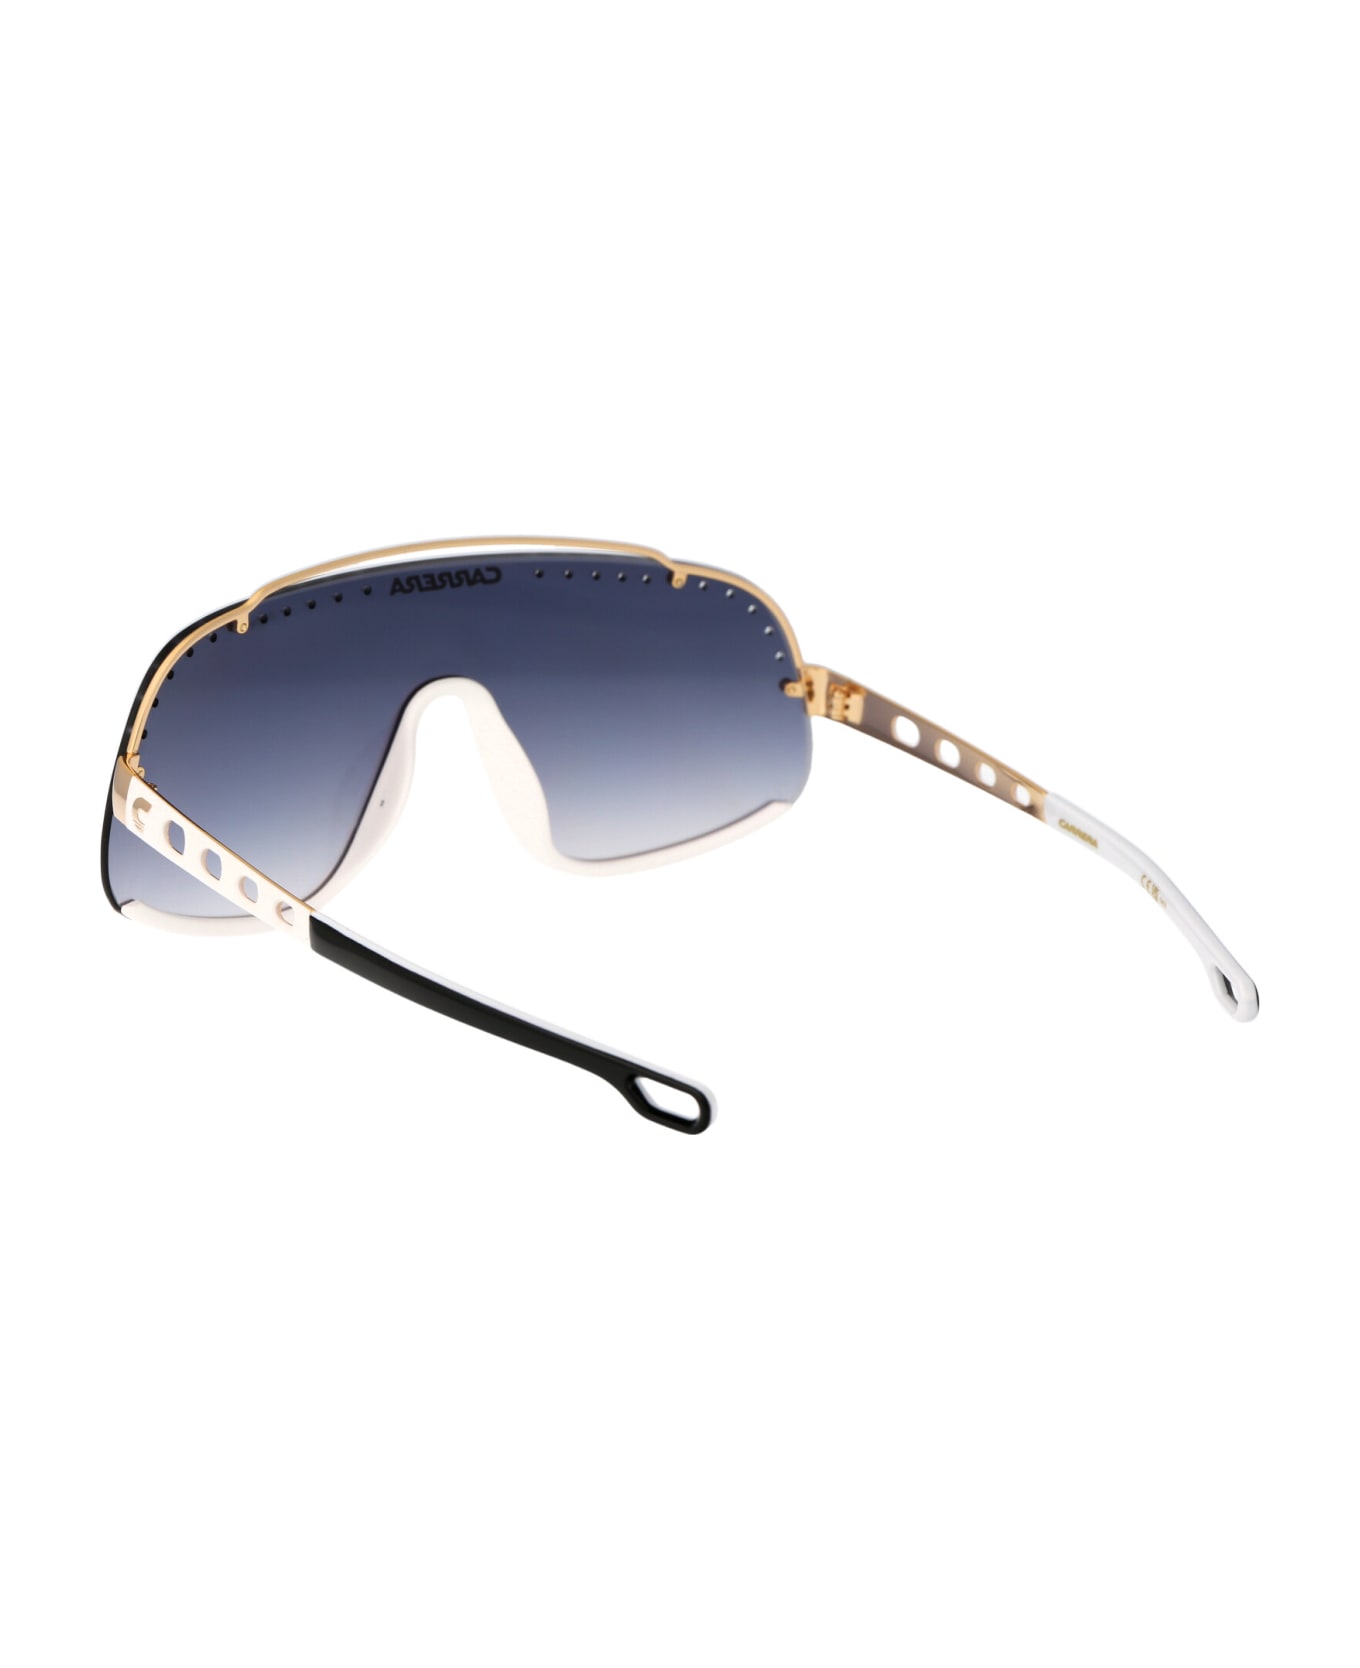 Carrera Flaglab 16 Sunglasses - KY21V BLUE GOLD